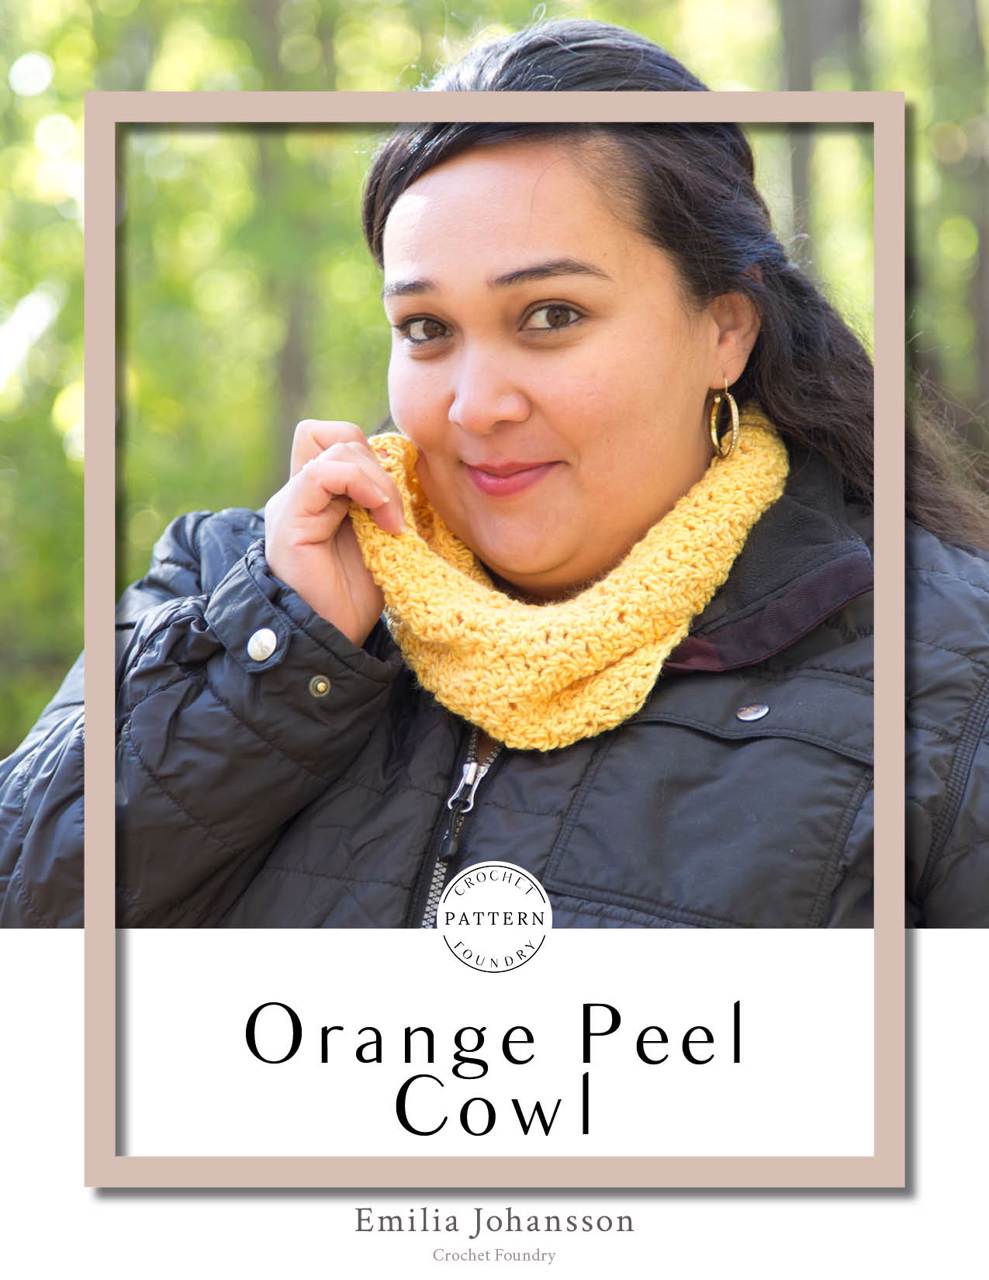 Orange Peel Cowl Crochet PDF Pattern by Emilia Johansson